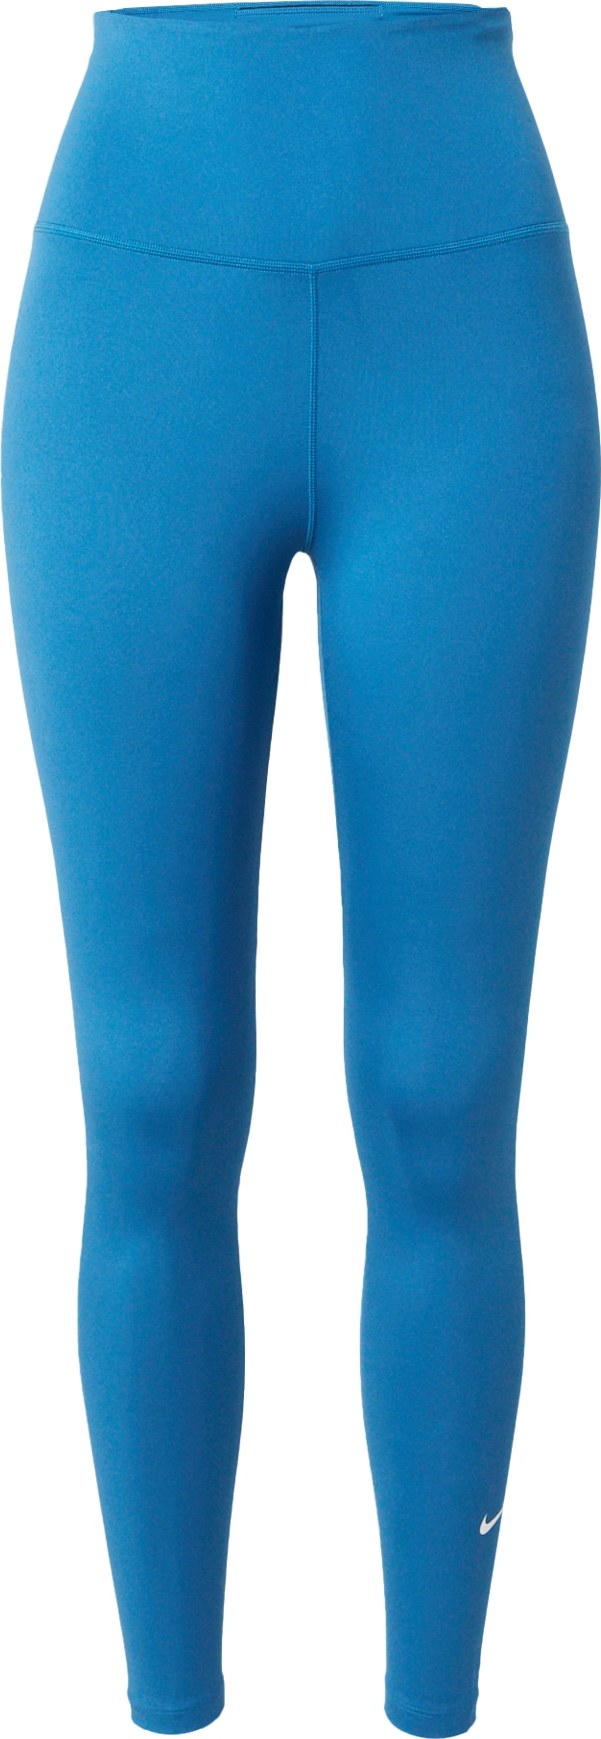 Sportovní kalhoty 'One' Nike nebeská modř